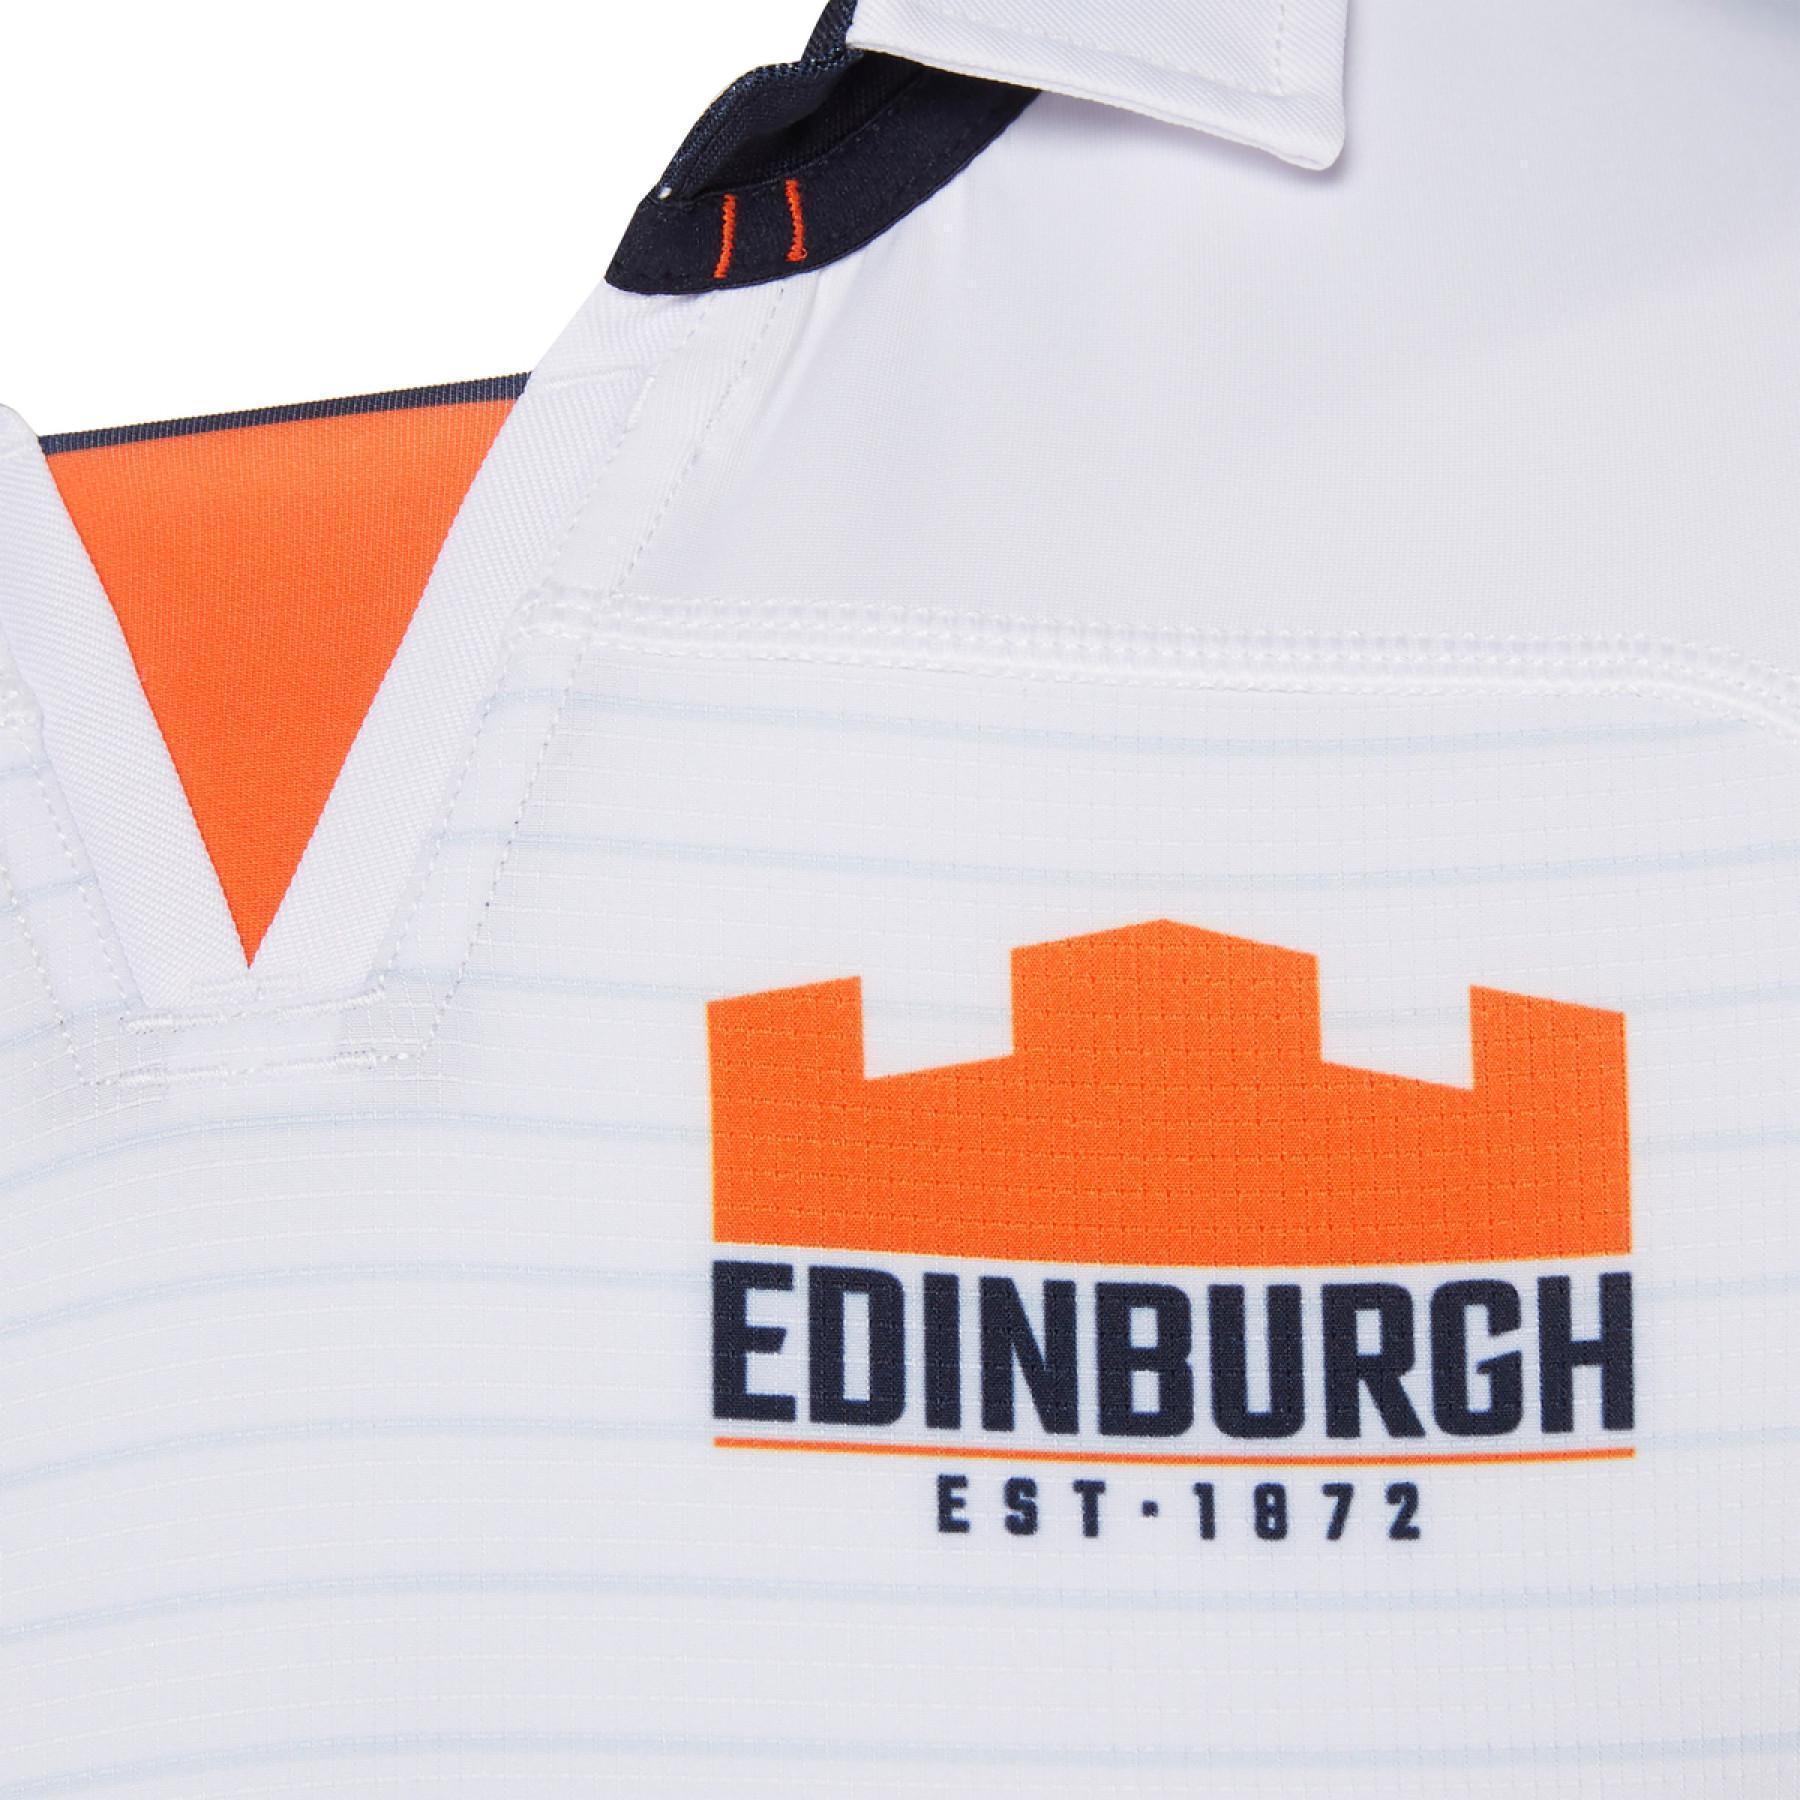 Autentyczna koszulka outdoorowa Edinburgh rugby 2019/2020